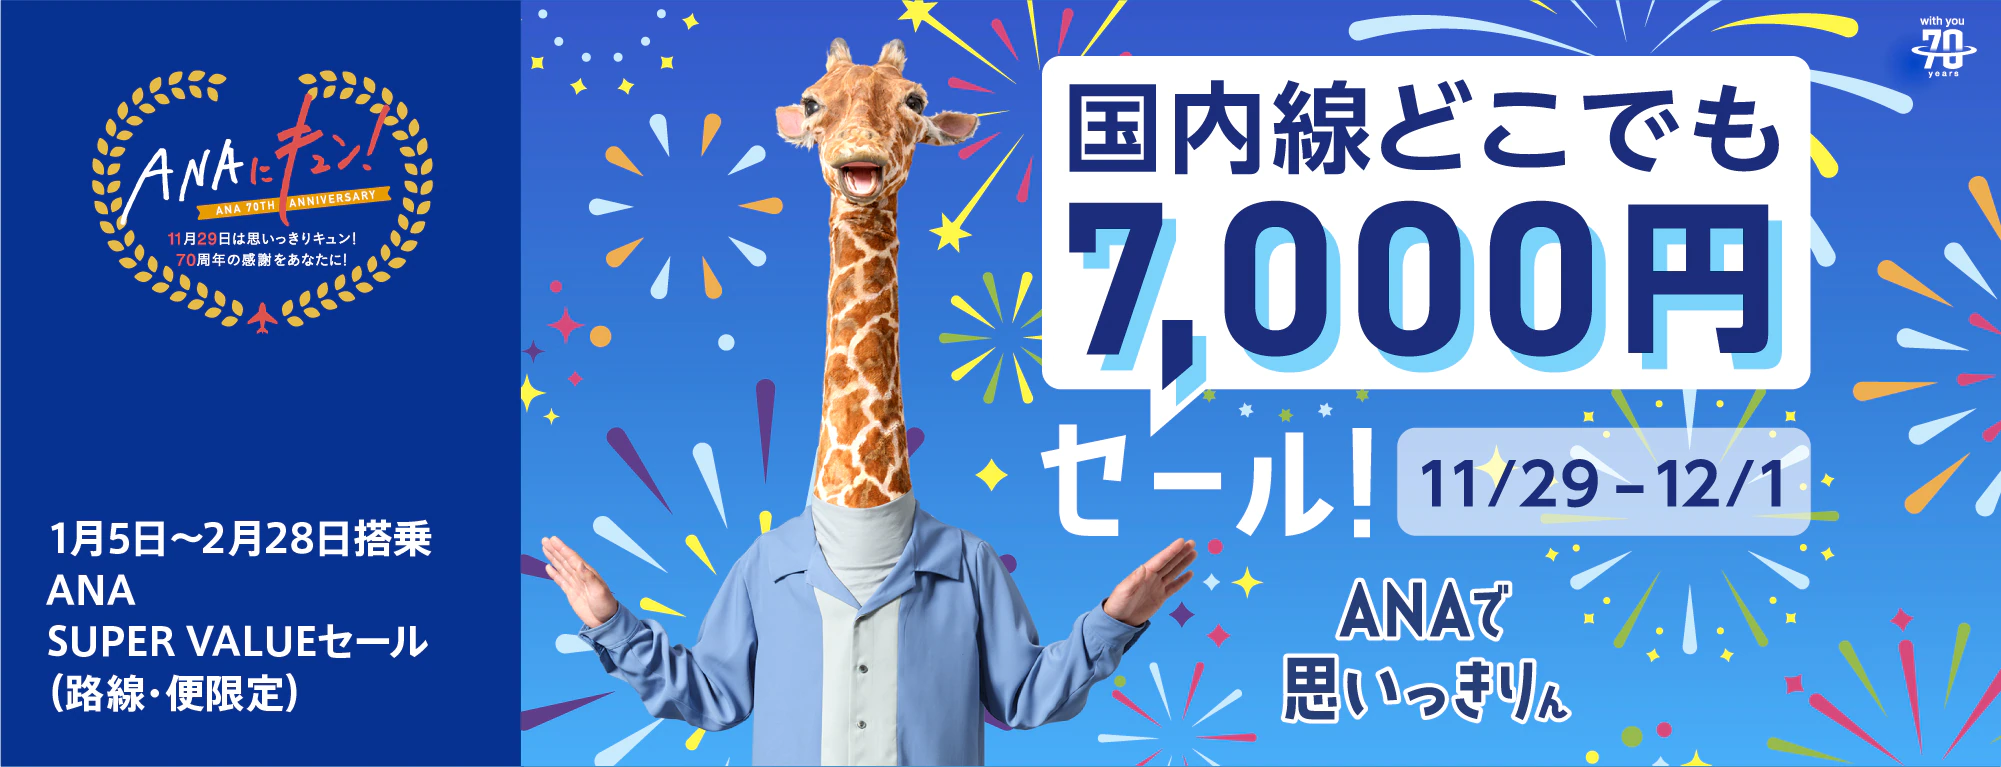 本日限定 大幅値下げ ANA クーポン 4万円相当 - 優待券/割引券チケット 15050円